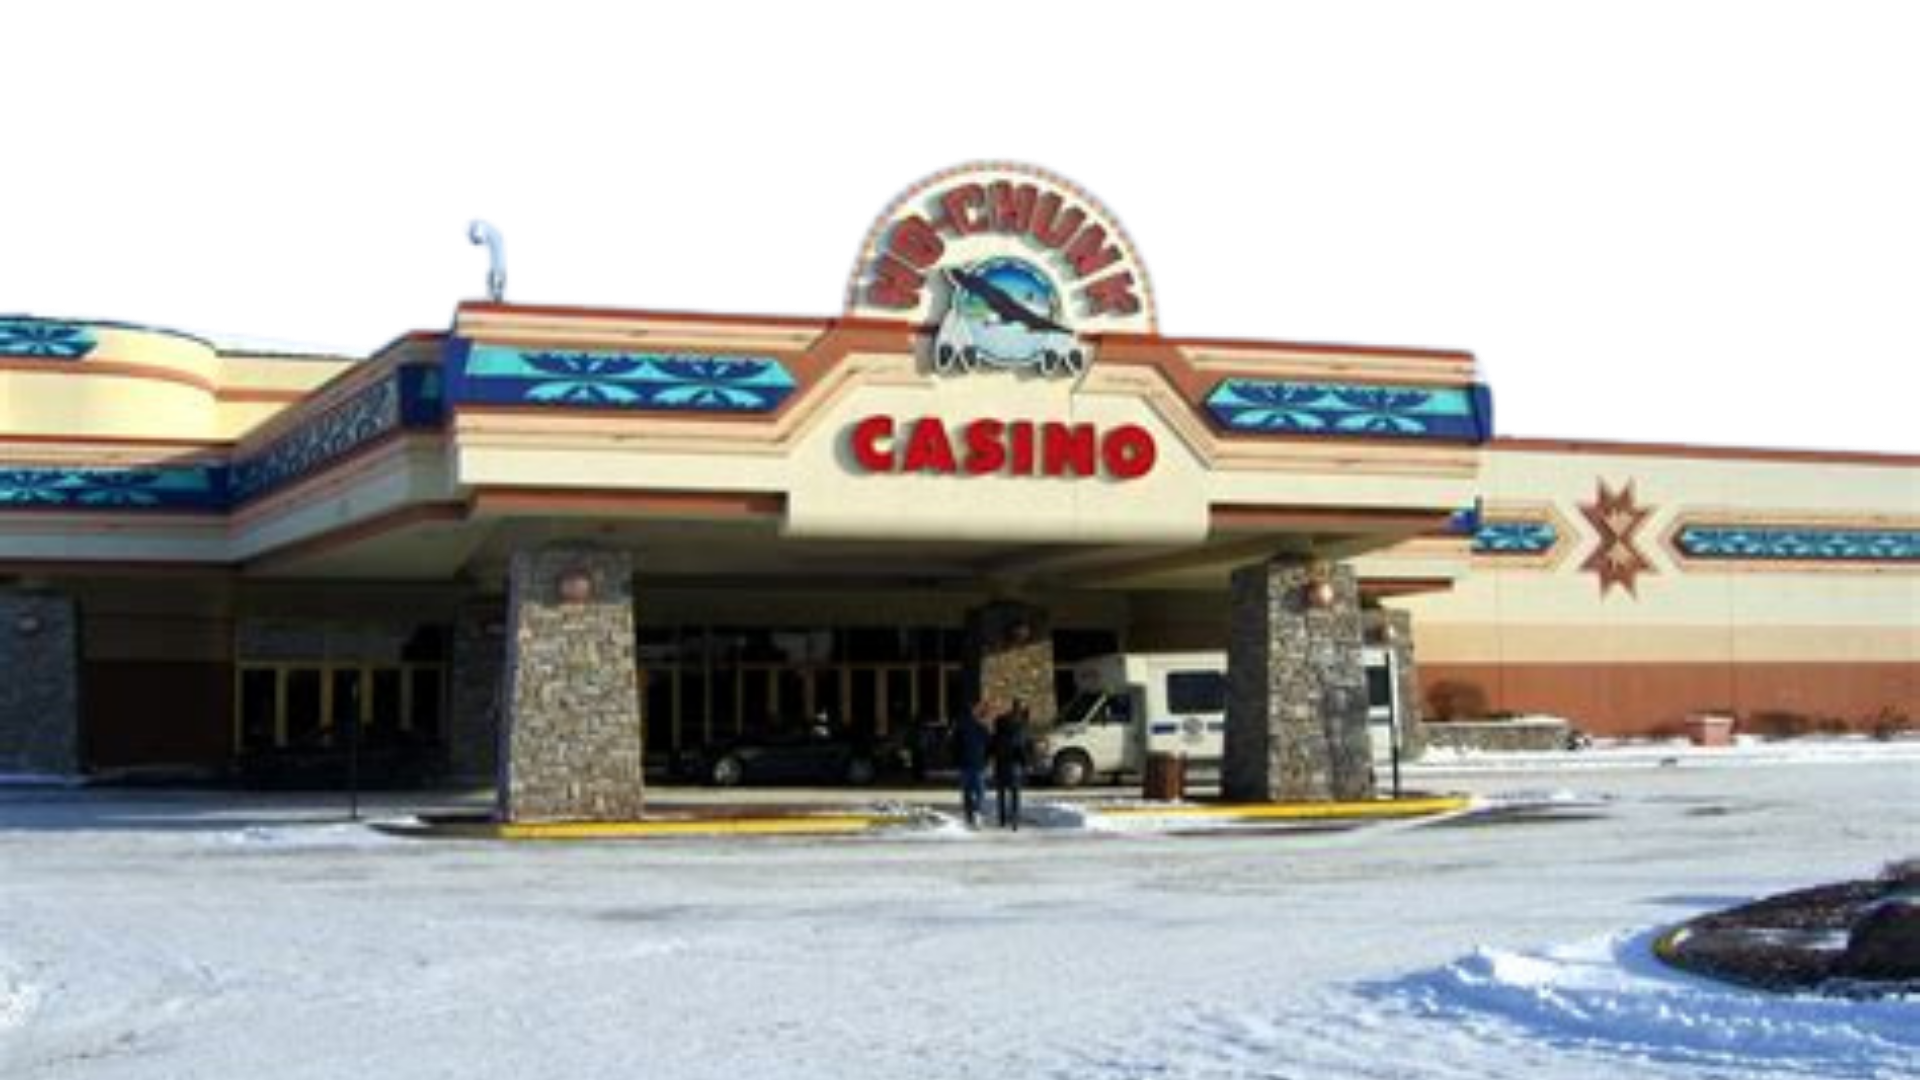 Starlight Tours at Ho Chunk Casino